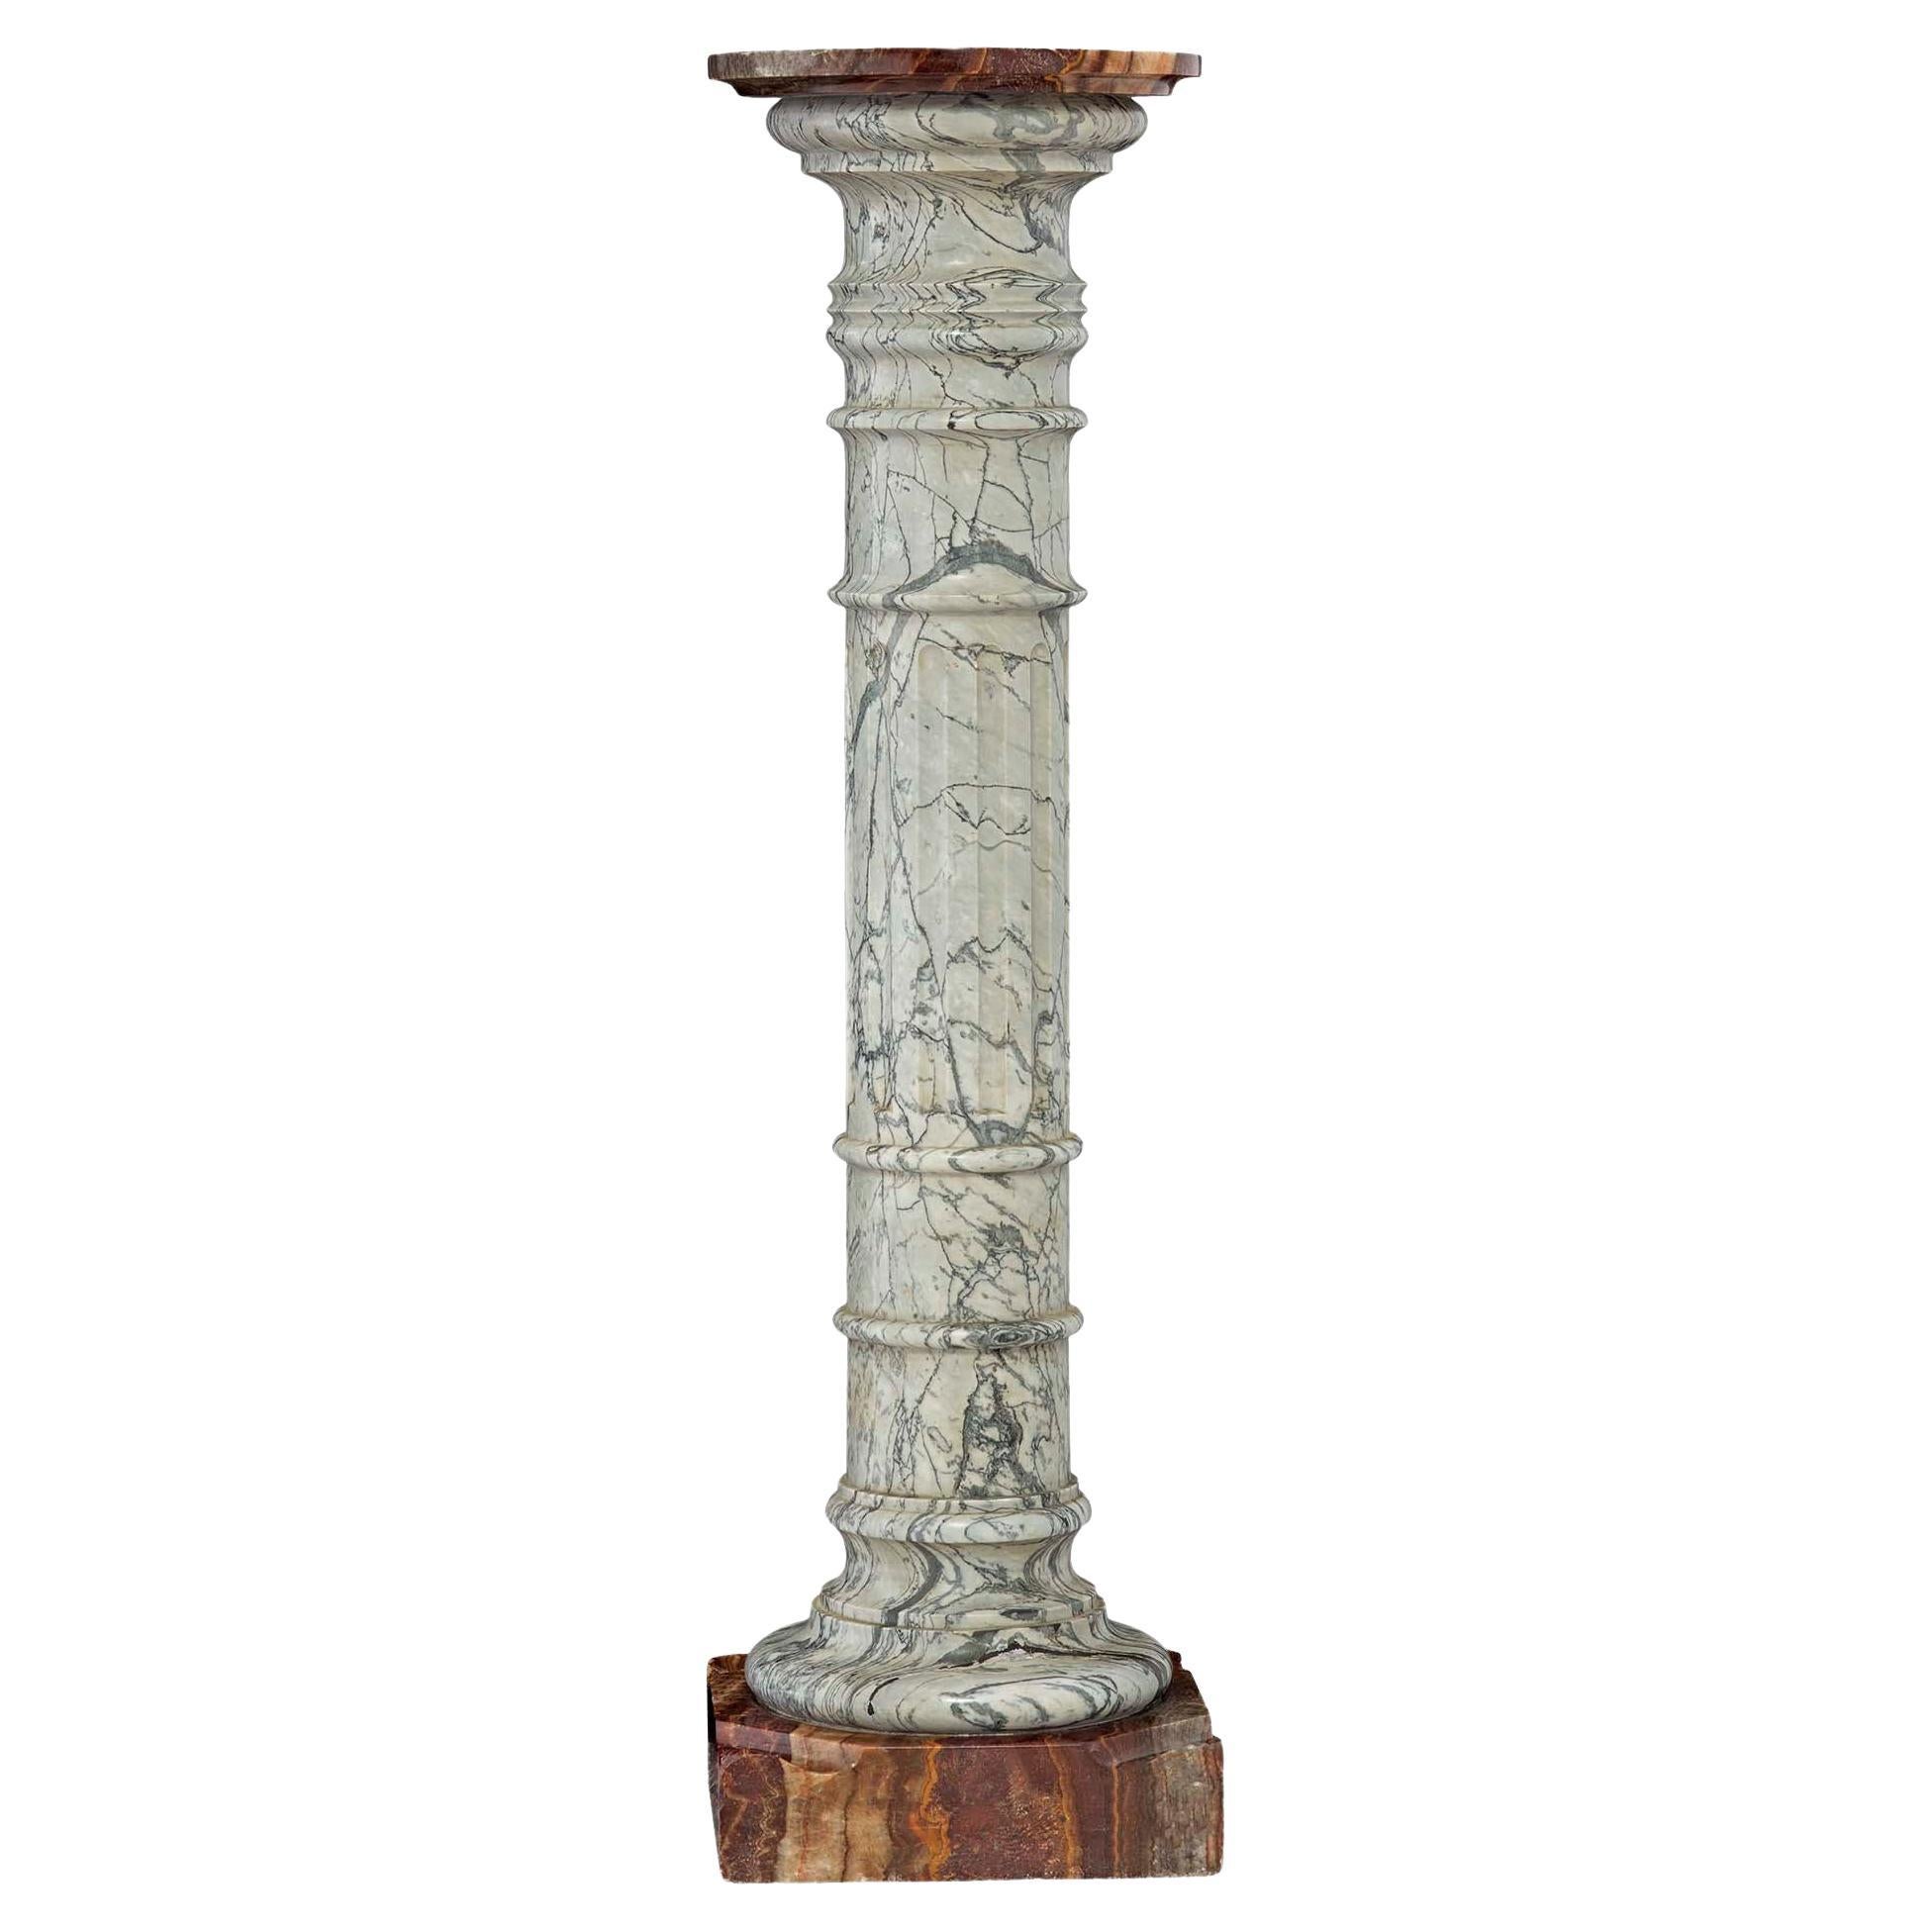 Colonna con piedistallo in marmo e onice neoclassico italiano del XIX secolo